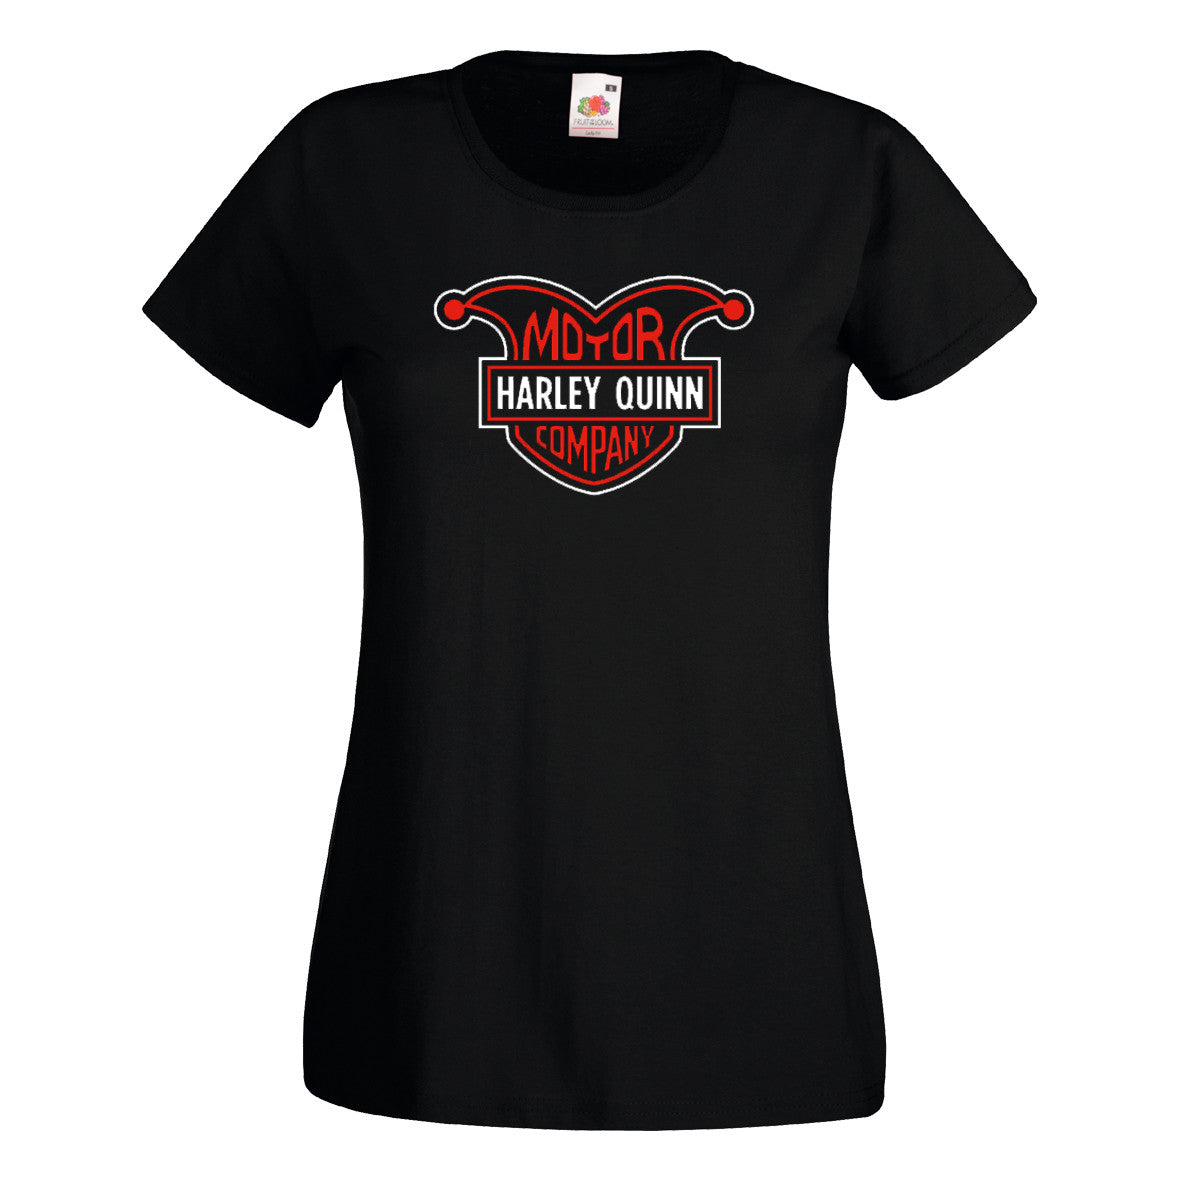 Motor Harley Quinn